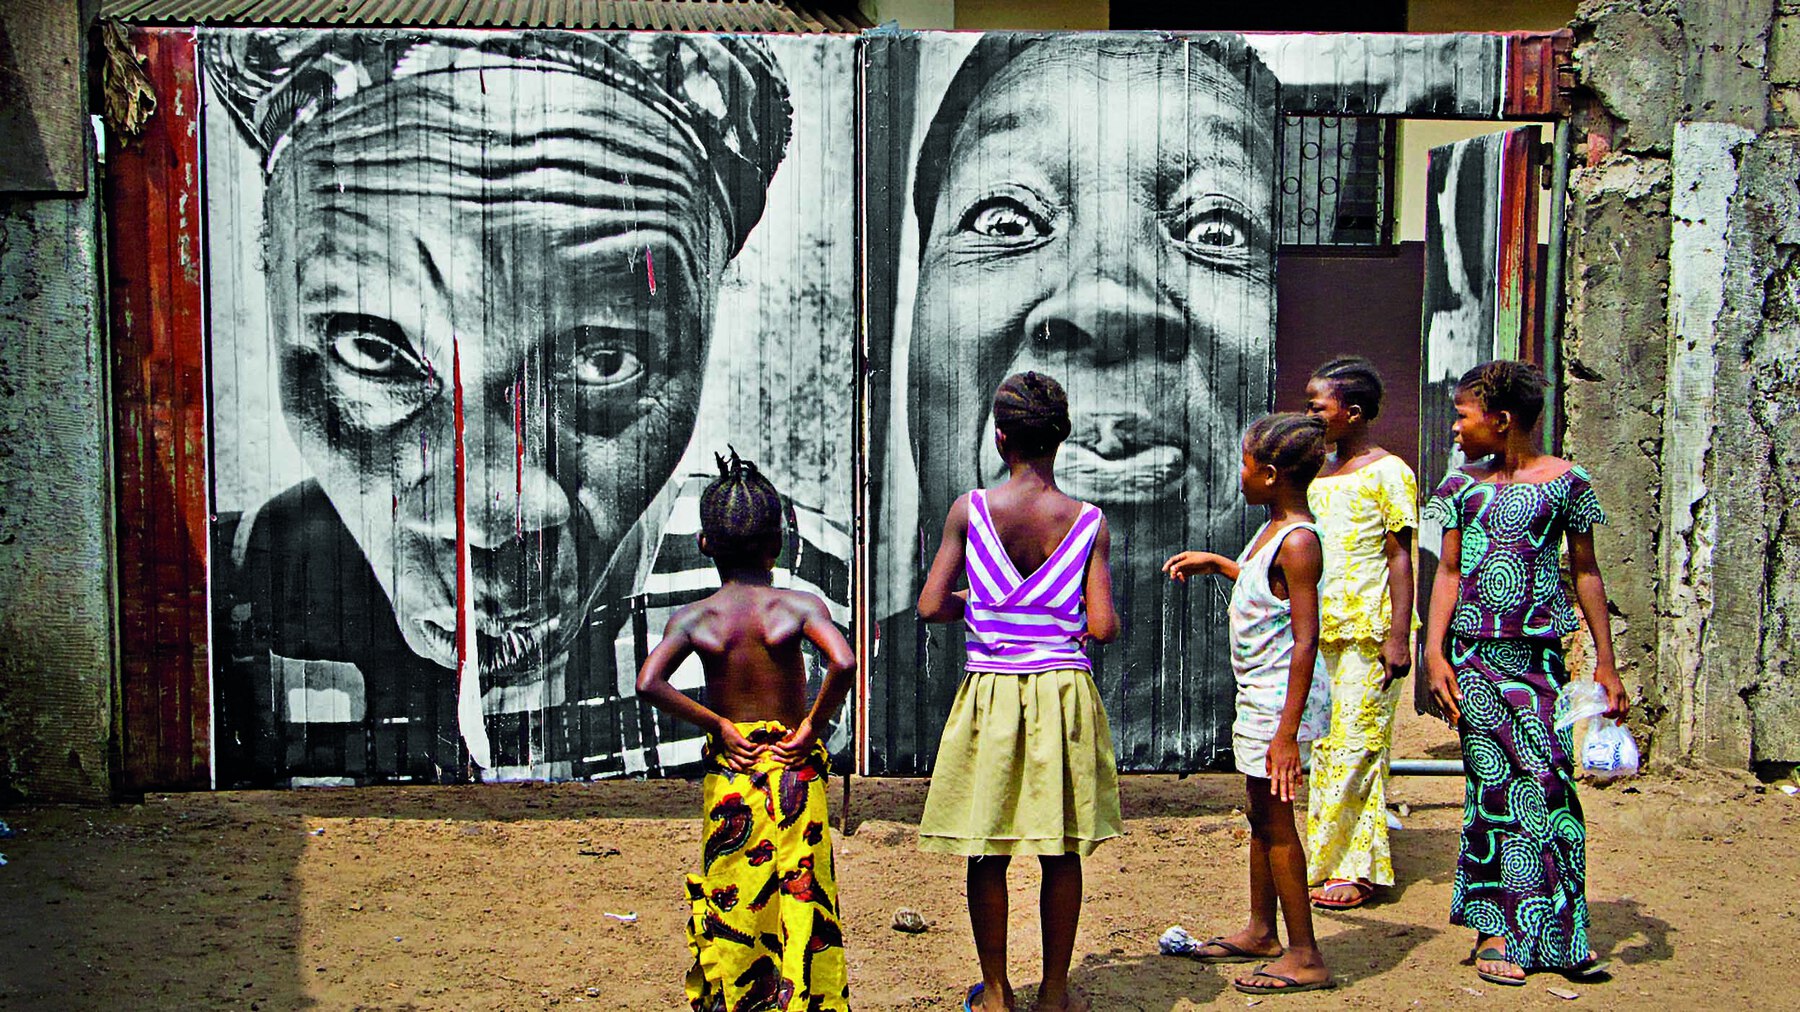 Fotografia. Em primeiro plano, cinco crianças vestidas com roupas estampadas coloridas estão em pé, de costas, observando um muro com intervenção artística. Ao fundo, grafite realista em preto e branco de rostos de duas mulheres com turbantes na cabeça.